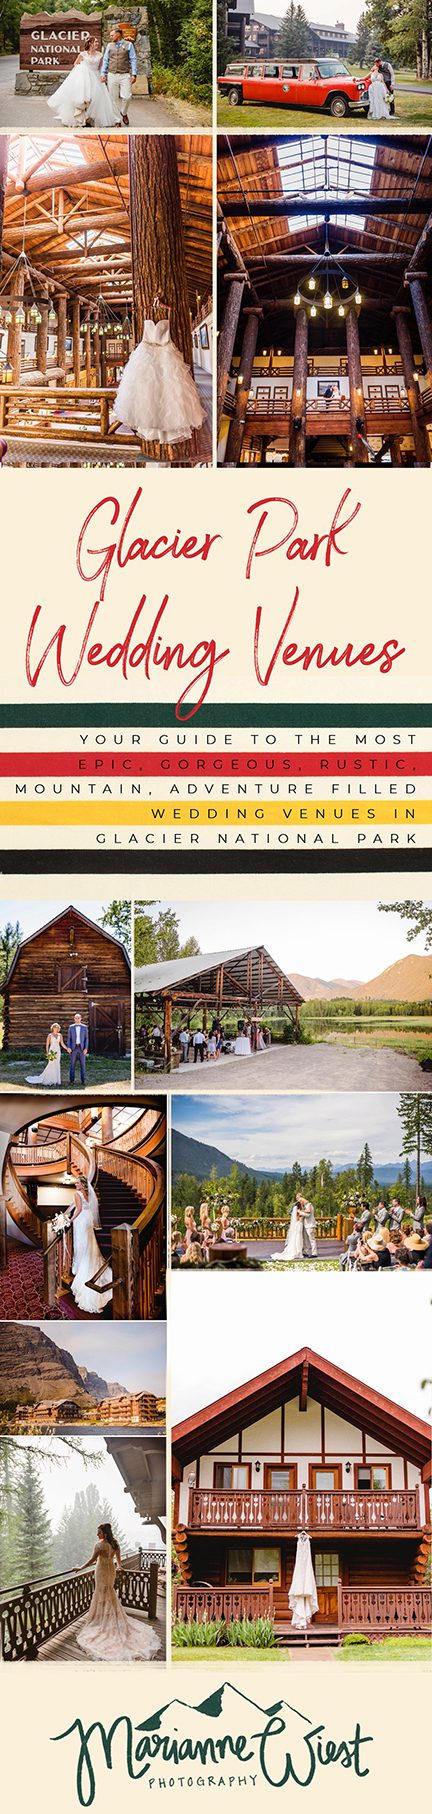 glacier national park wedding venues